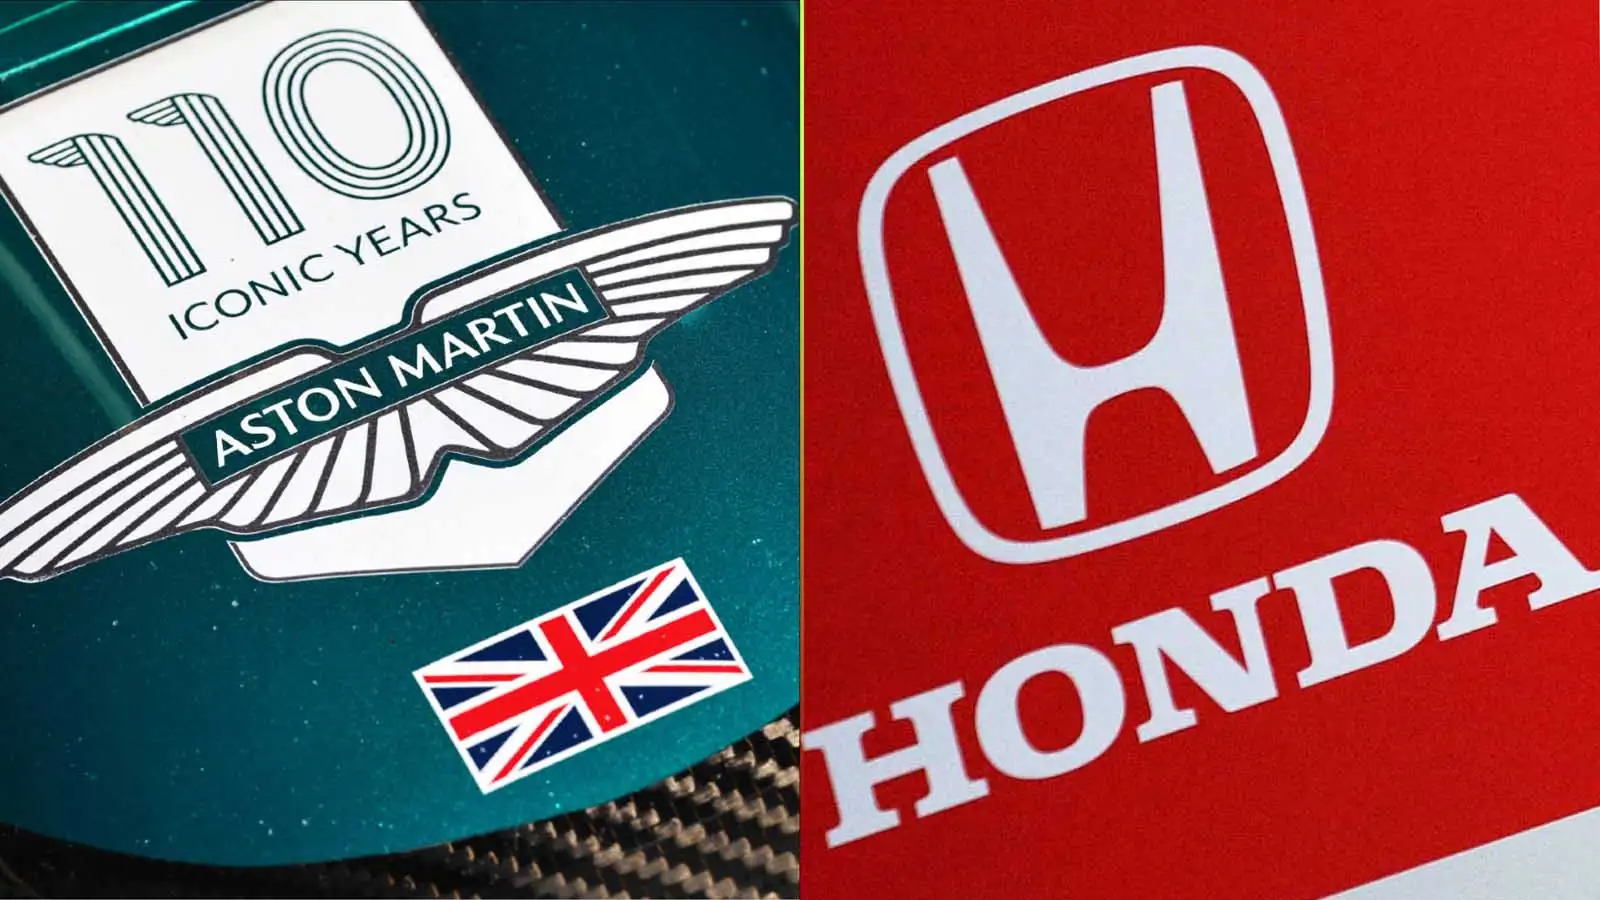 Aston Martin and Honda logos.